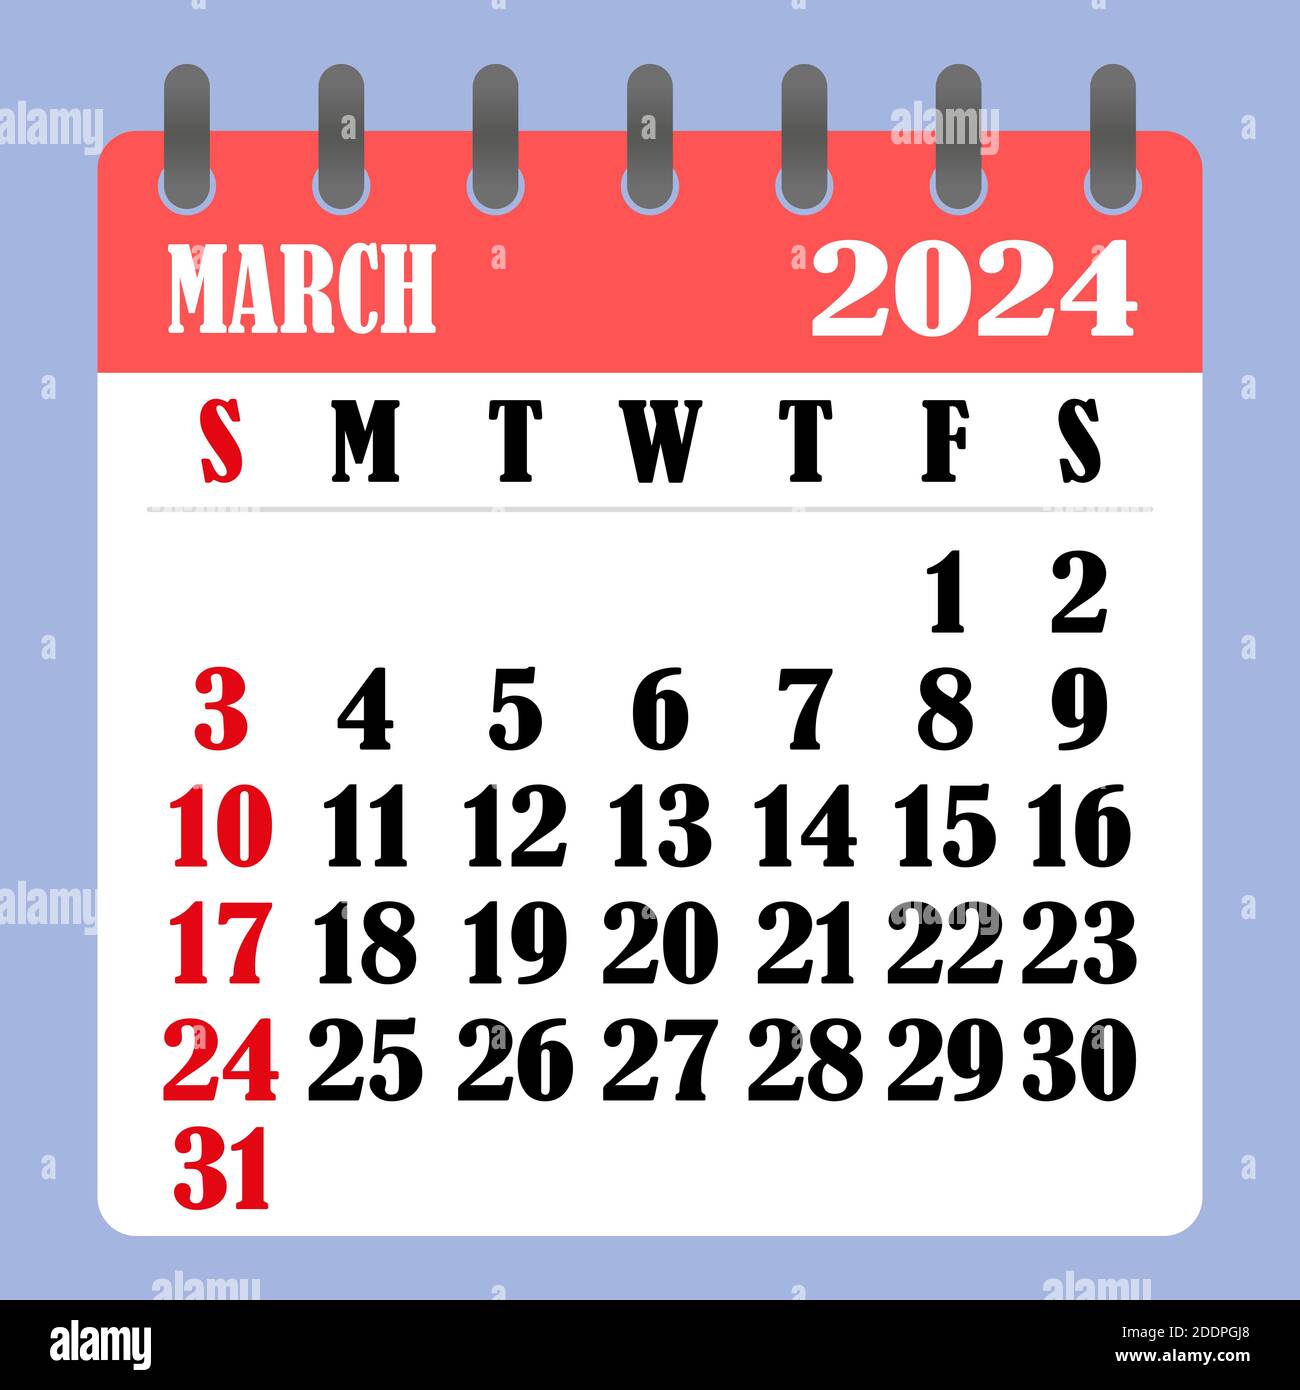 Календарь операций на март 2024 года. Календарь март 2024. Календарь на март 2024 года. Календарик на март 2024 года. Календадьмарт 2024.